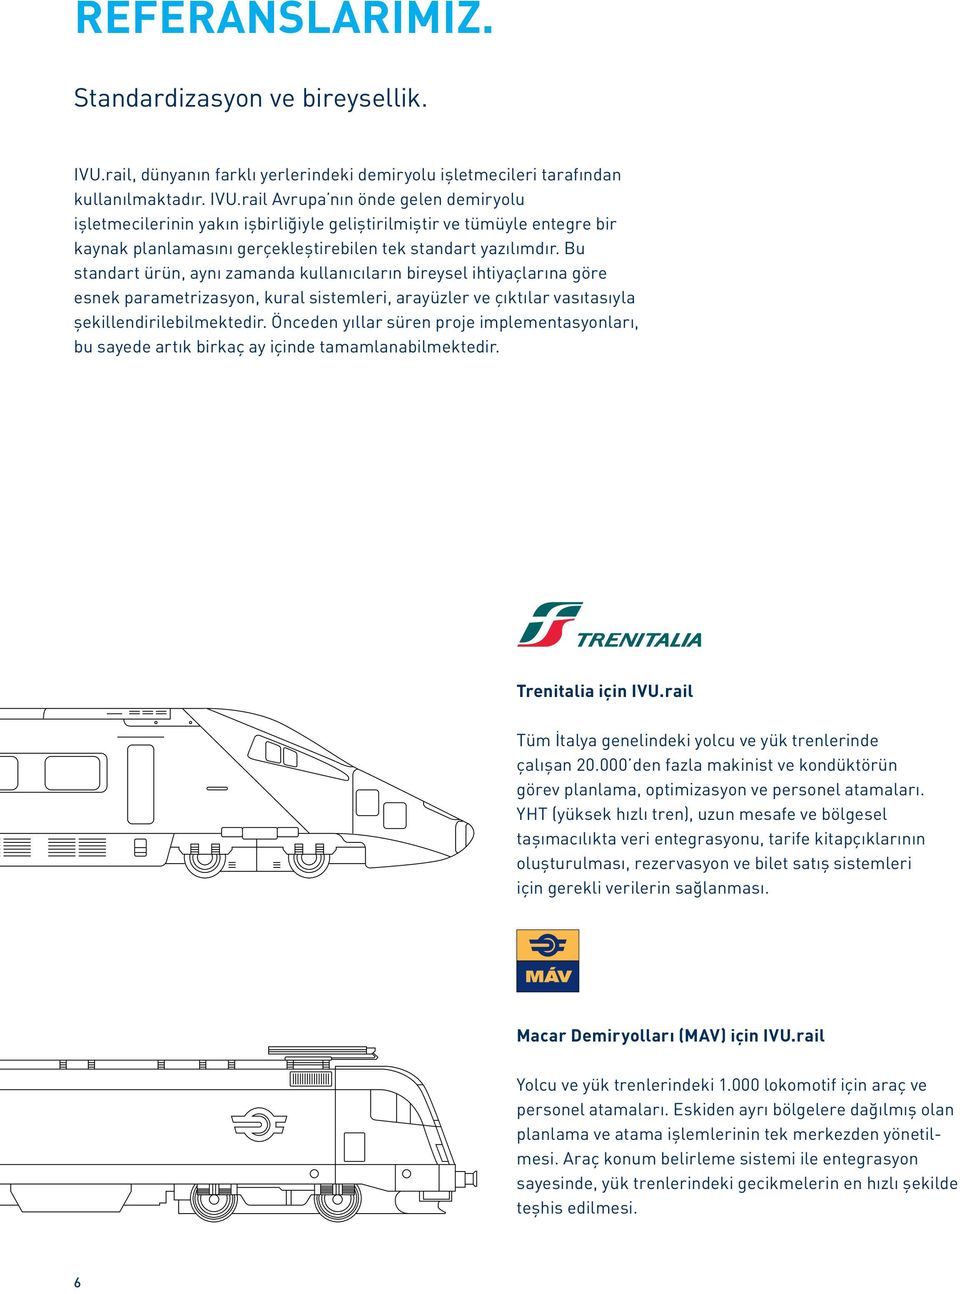 rail Avrupa nın önde gelen demiryolu işletmecilerinin yakın işbirliğiyle geliştirilmiştir ve tümüyle entegre bir kaynak planlamasını gerçekleştirebilen tek standart yazılımdır.